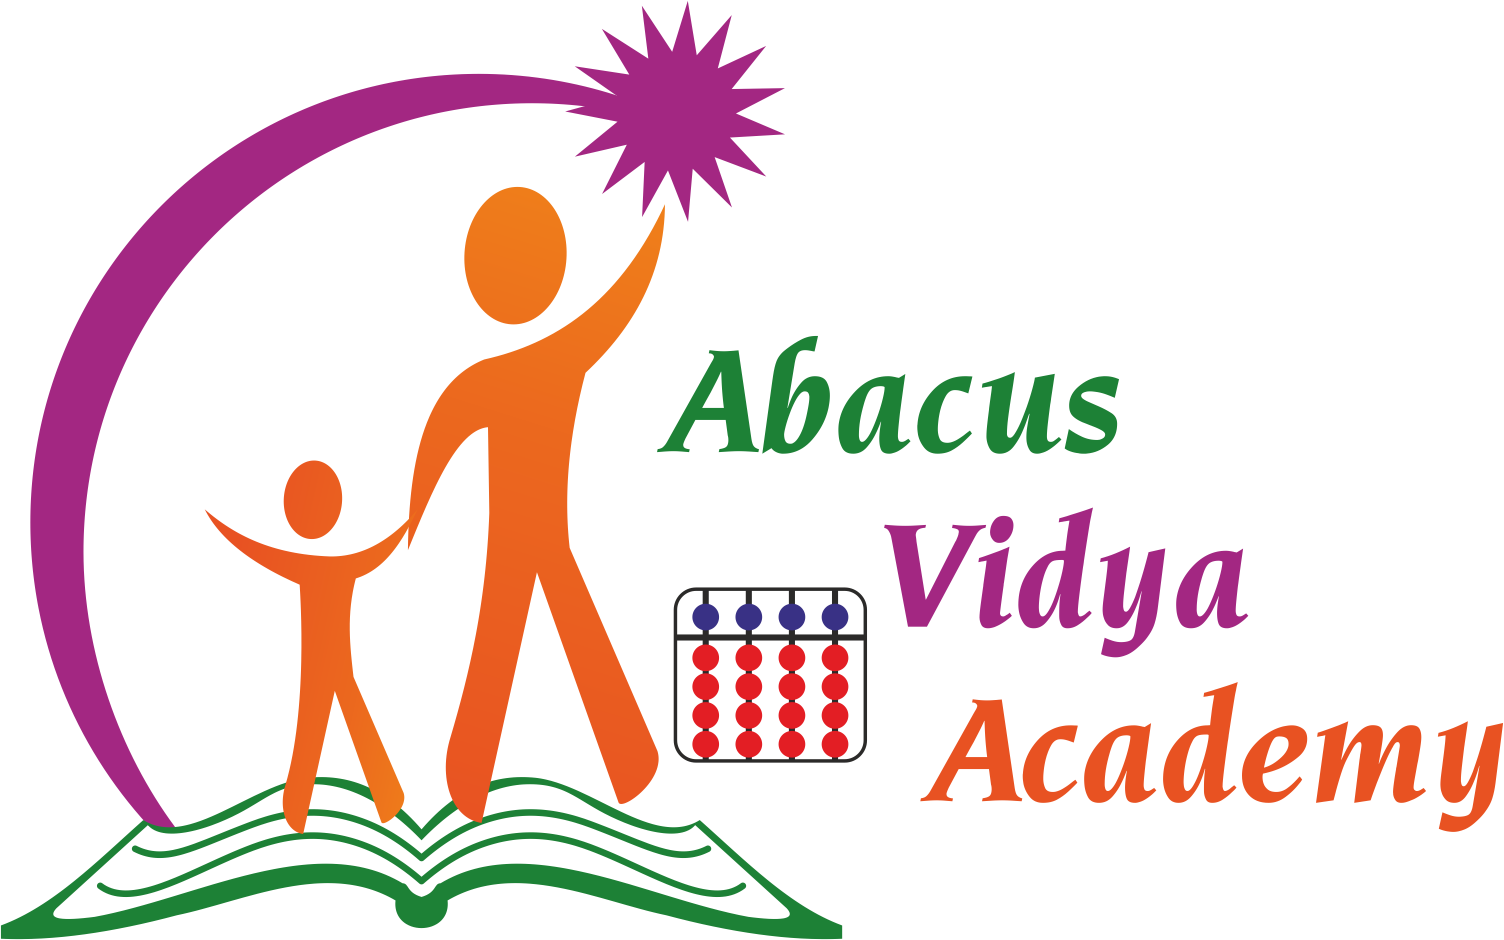 Abacus Vidya Academy Logo PNG image